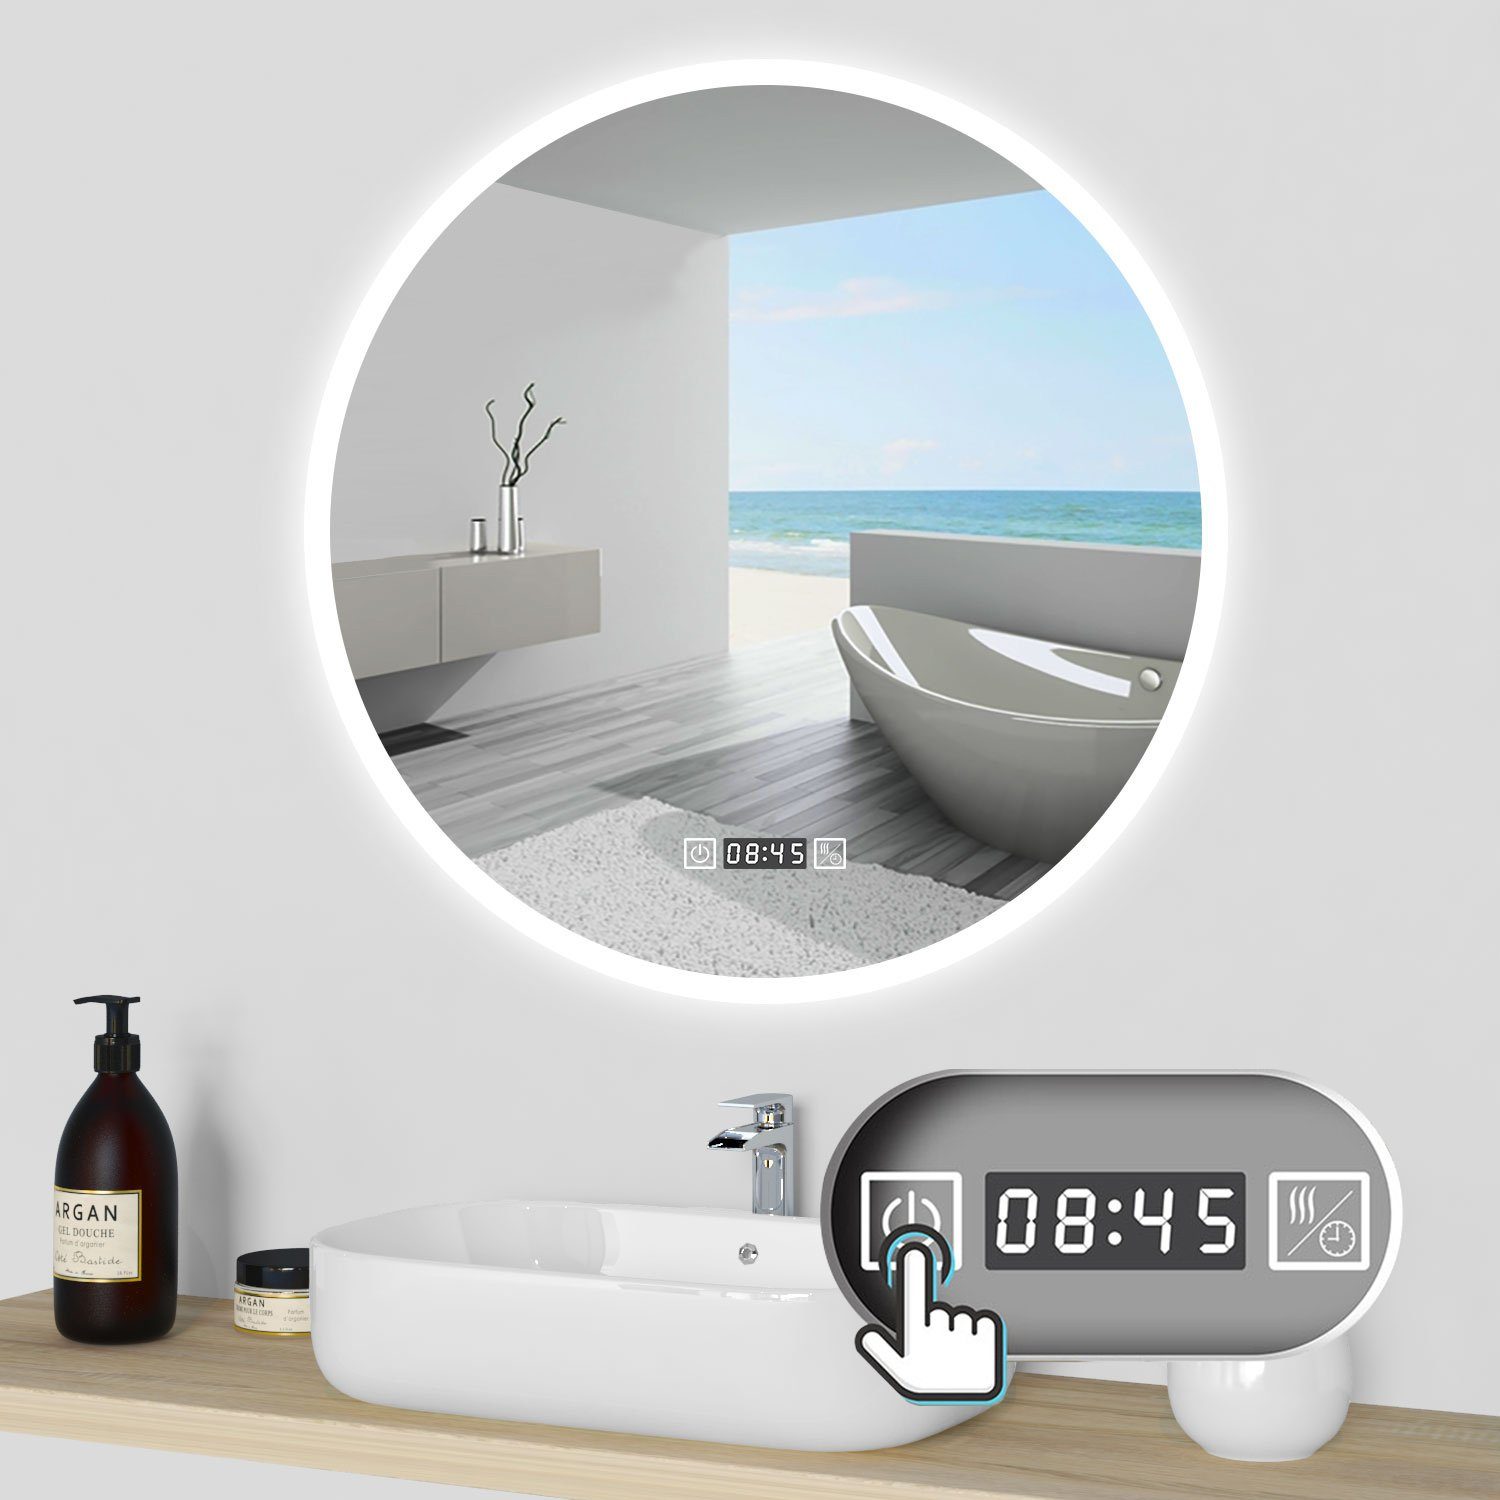 Rund Touch/Wandschalter Badspiegel duschspa Memory, Kalt/Neutral/Warmweiß Wandspiegel + Uhr dimmbar